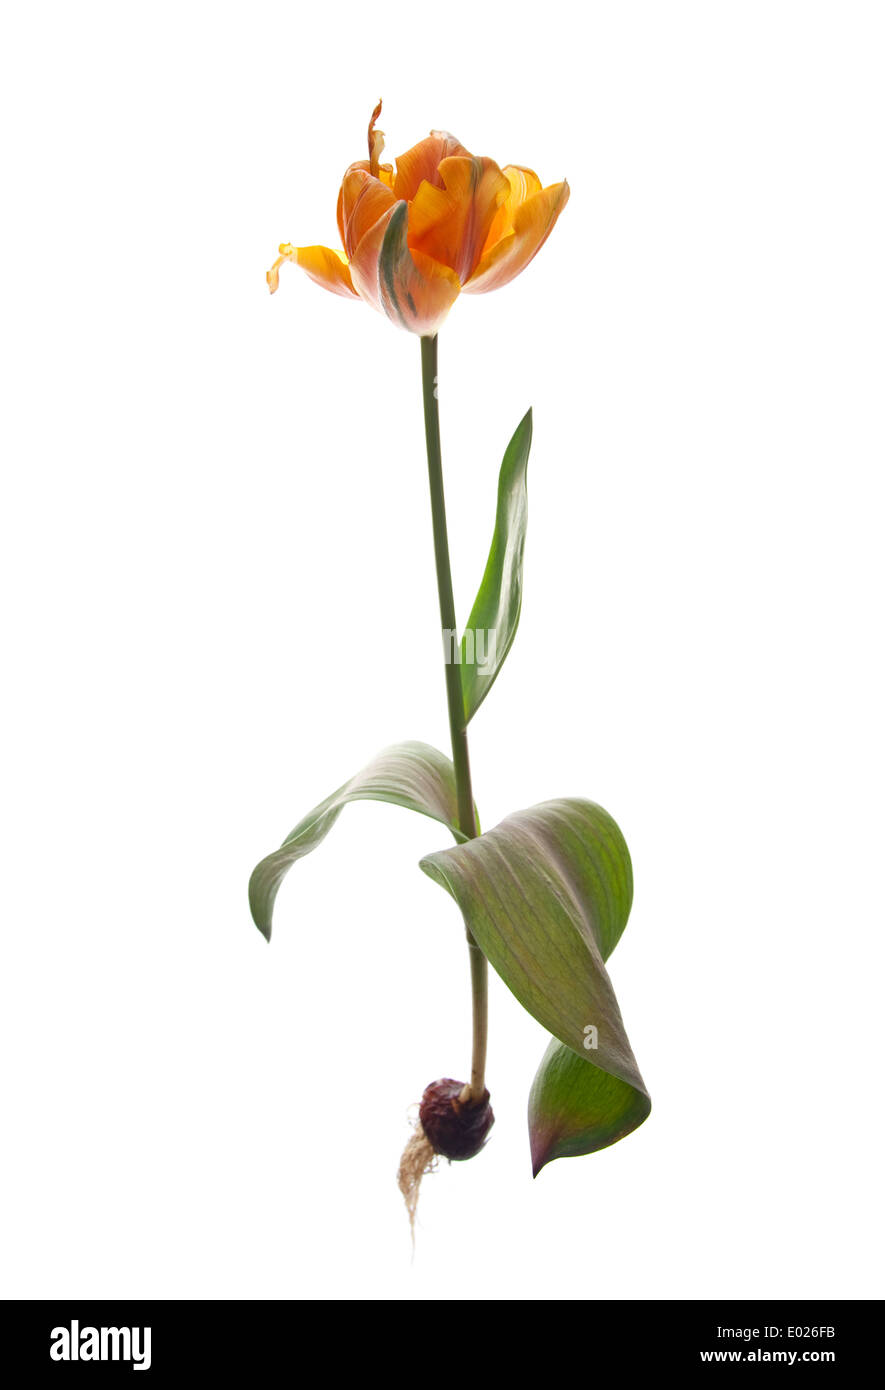 whole orange tulips Stock Photo